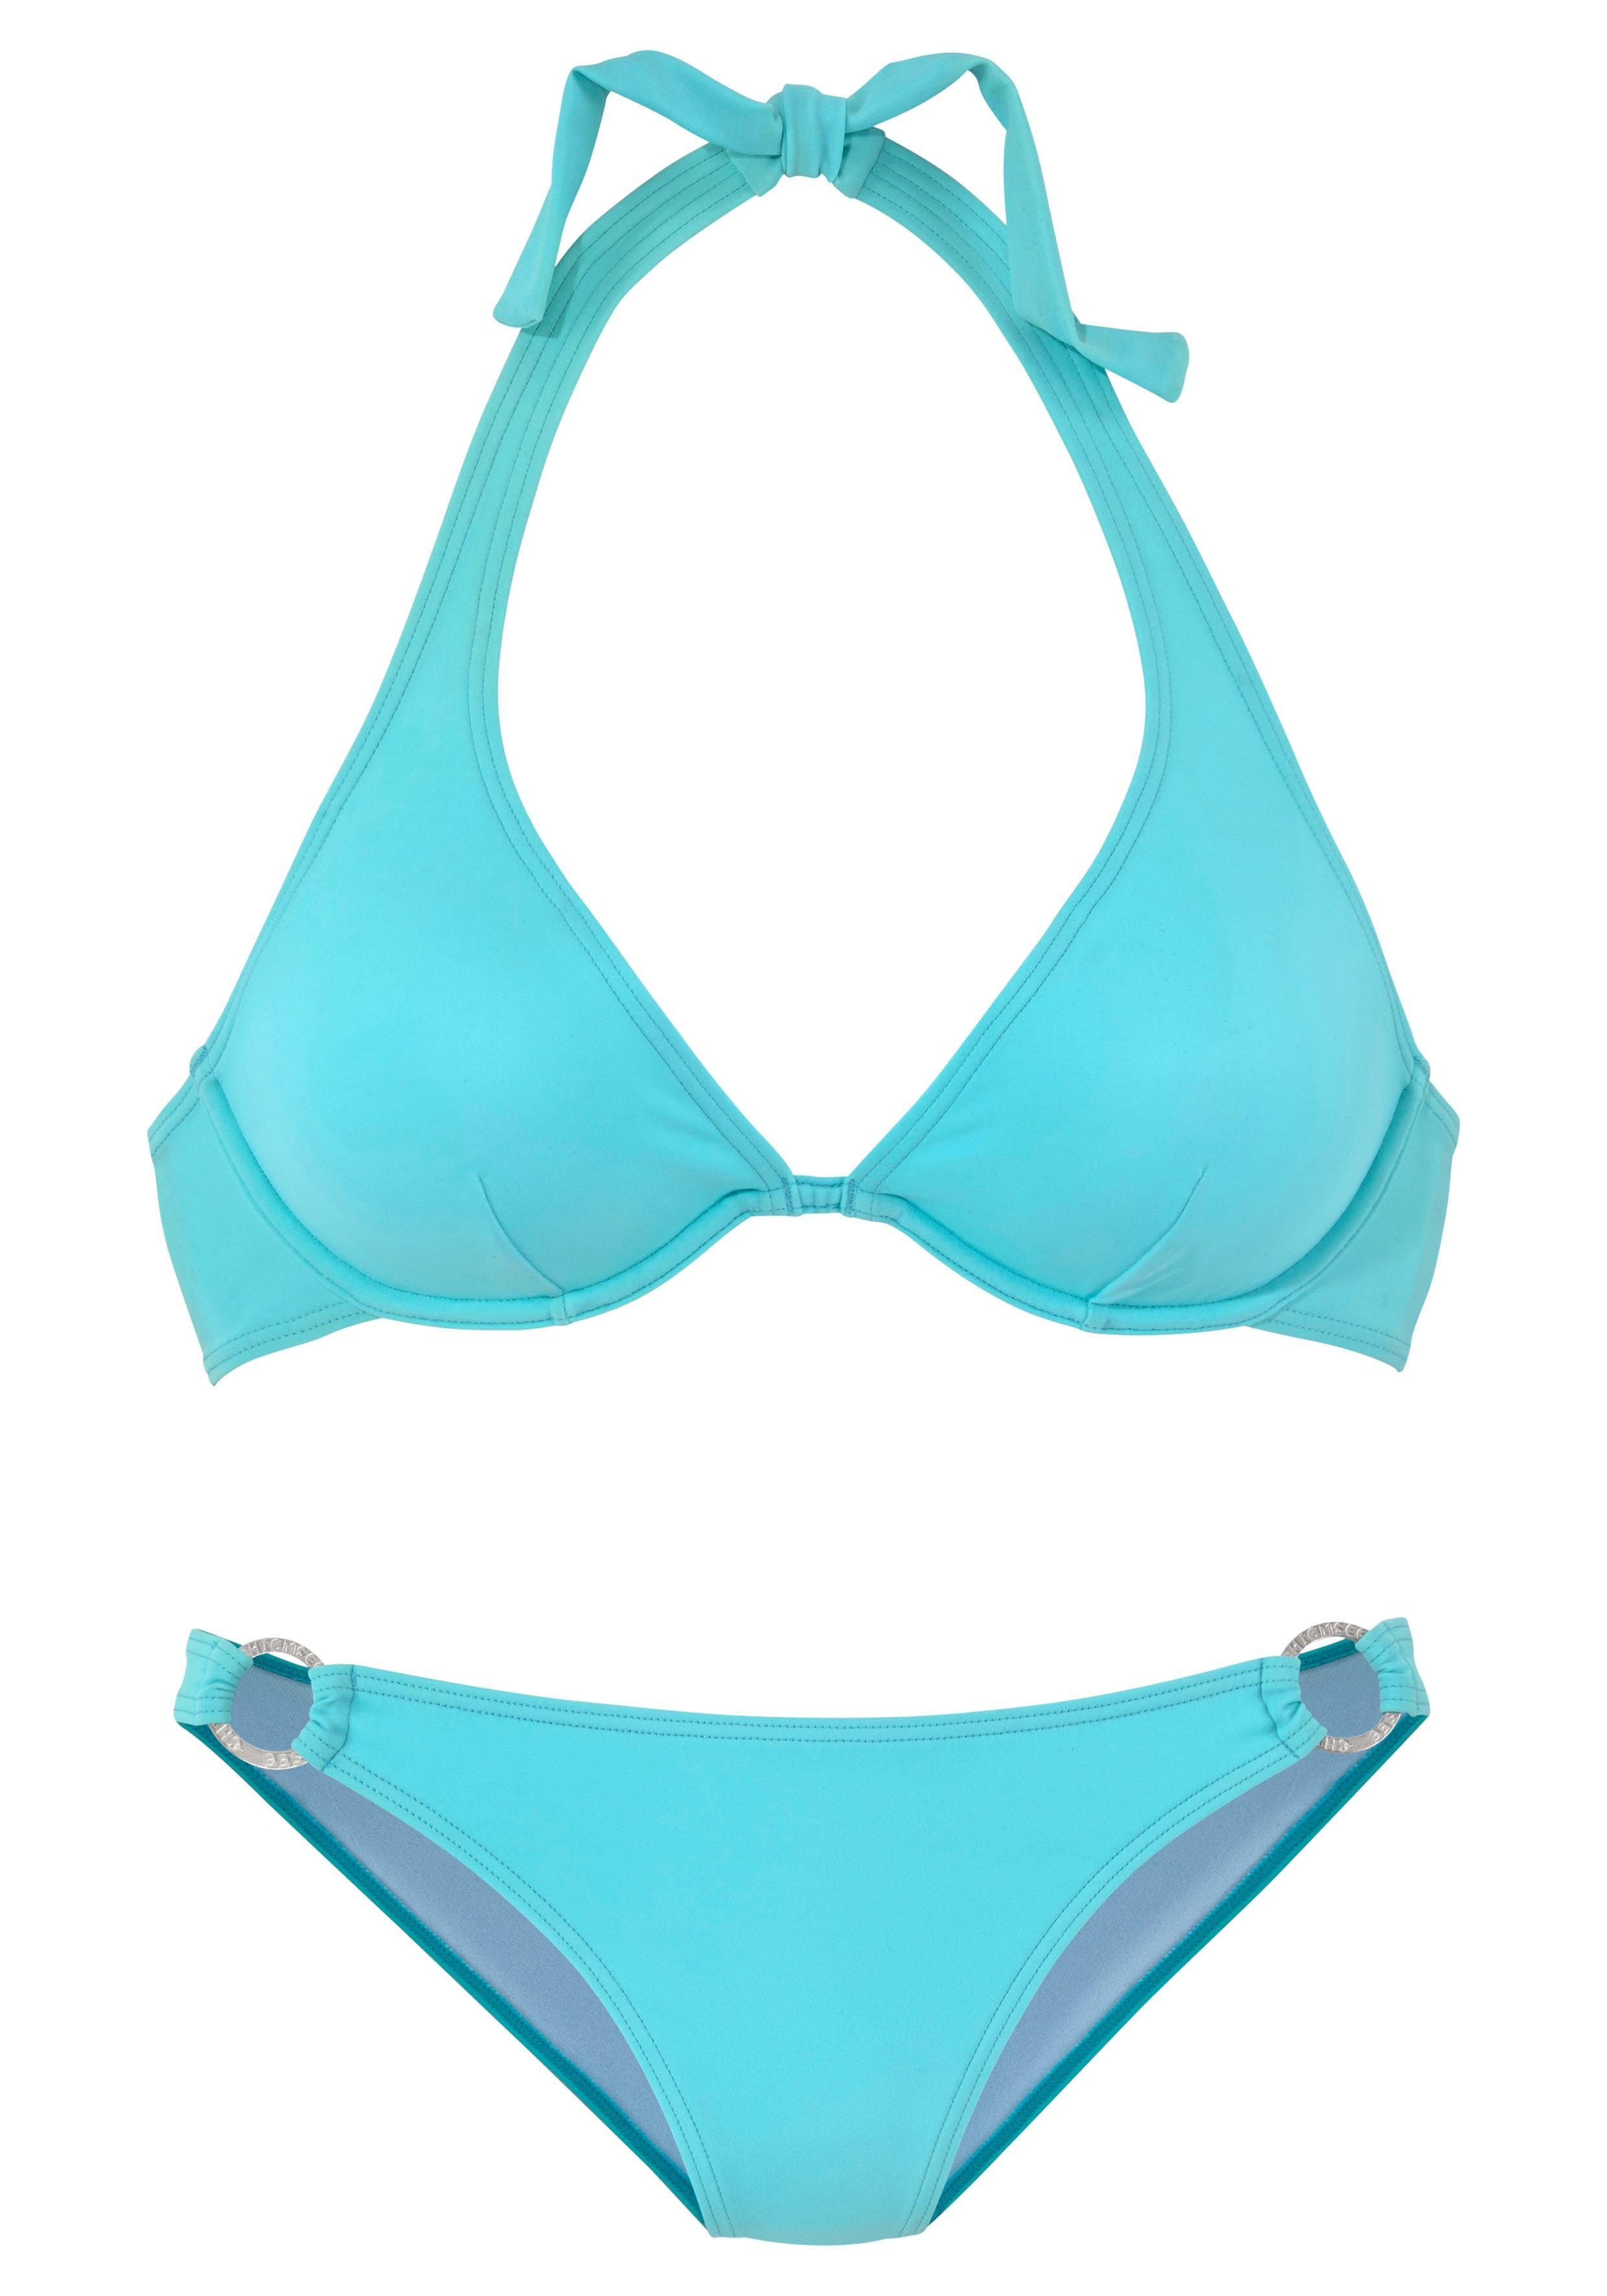 Zierring silbernem Bügel-Bikini hellblau mit Chiemsee